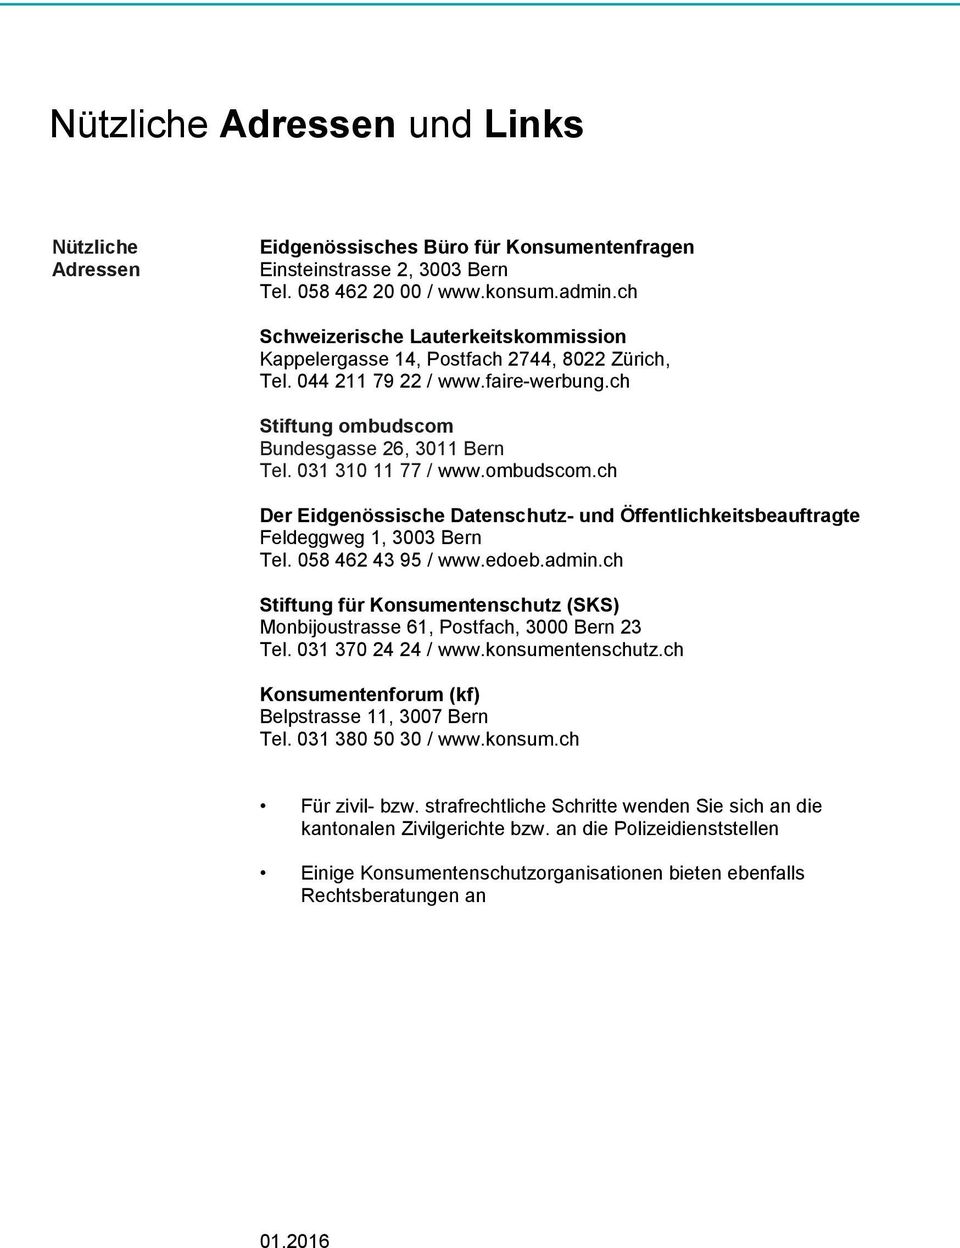 ombudscom.ch Der Eidgenössische Datenschutz- und Öffentlichkeitsbeauftragte Feldeggweg 1, 3003 Bern Tel. 058 462 43 95 / www.edoeb.admin.